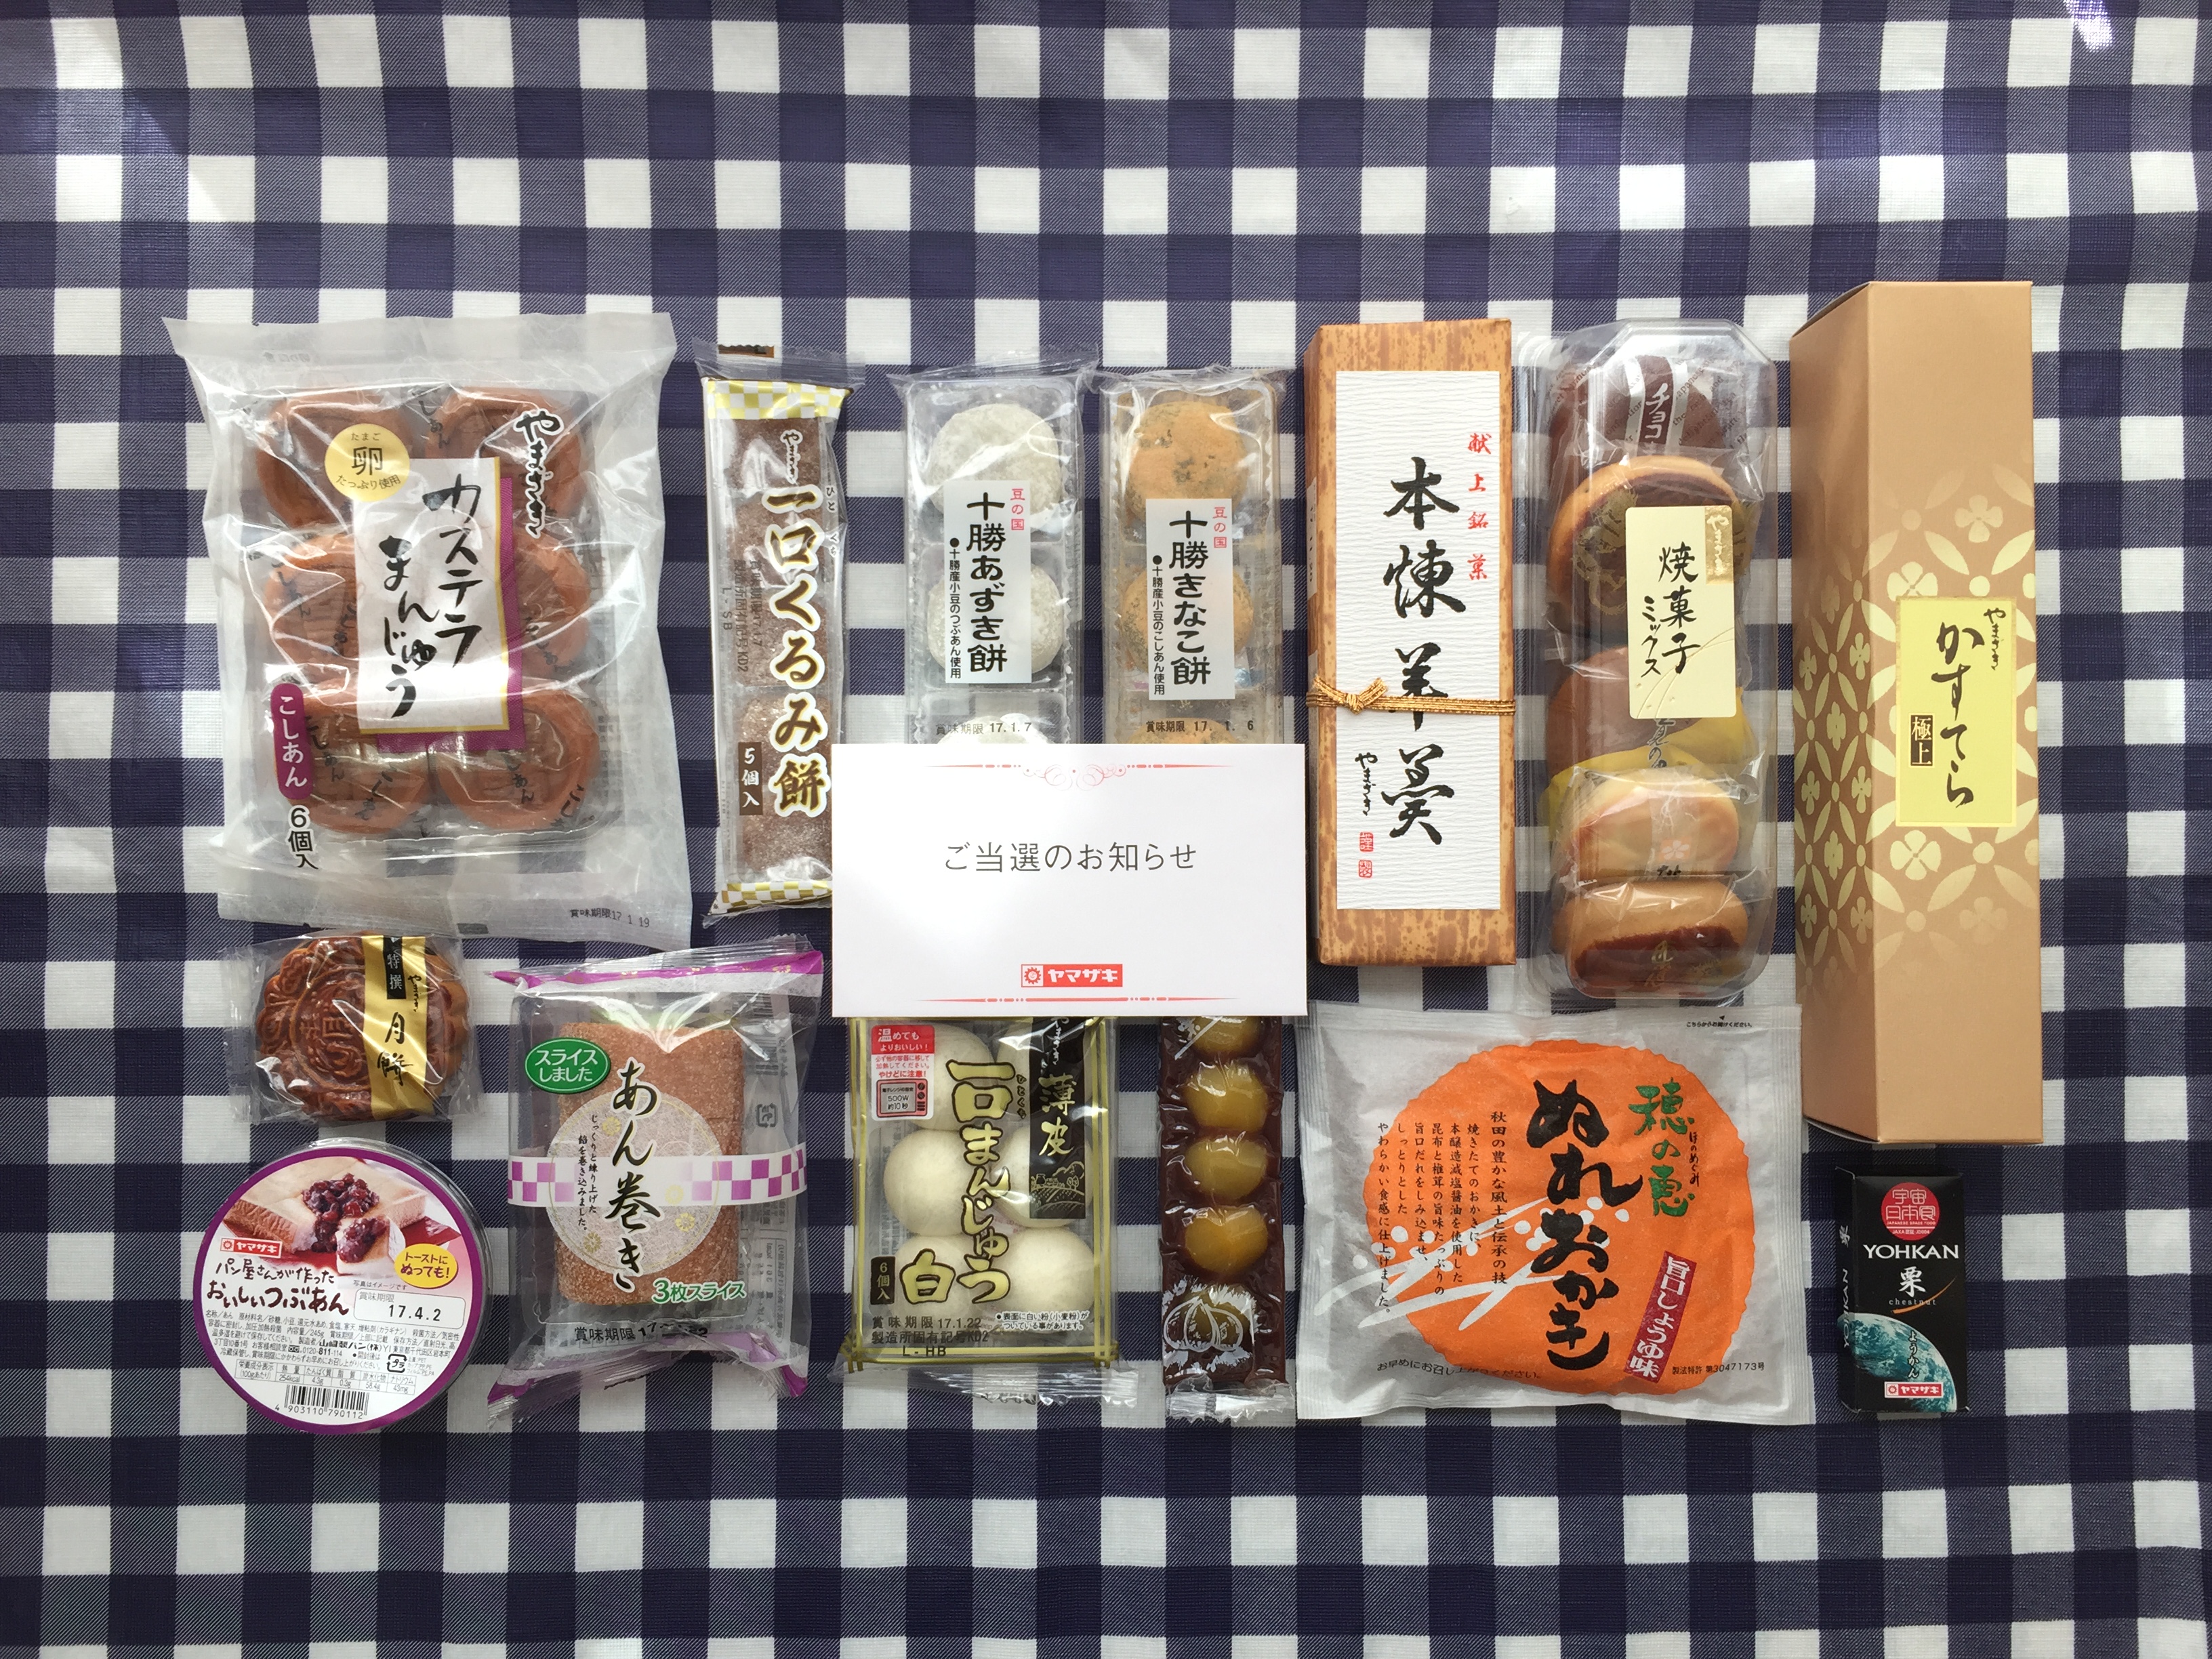 16ヤマザキ秋のおいしいキャンペーンで和菓子詰合わせが当選